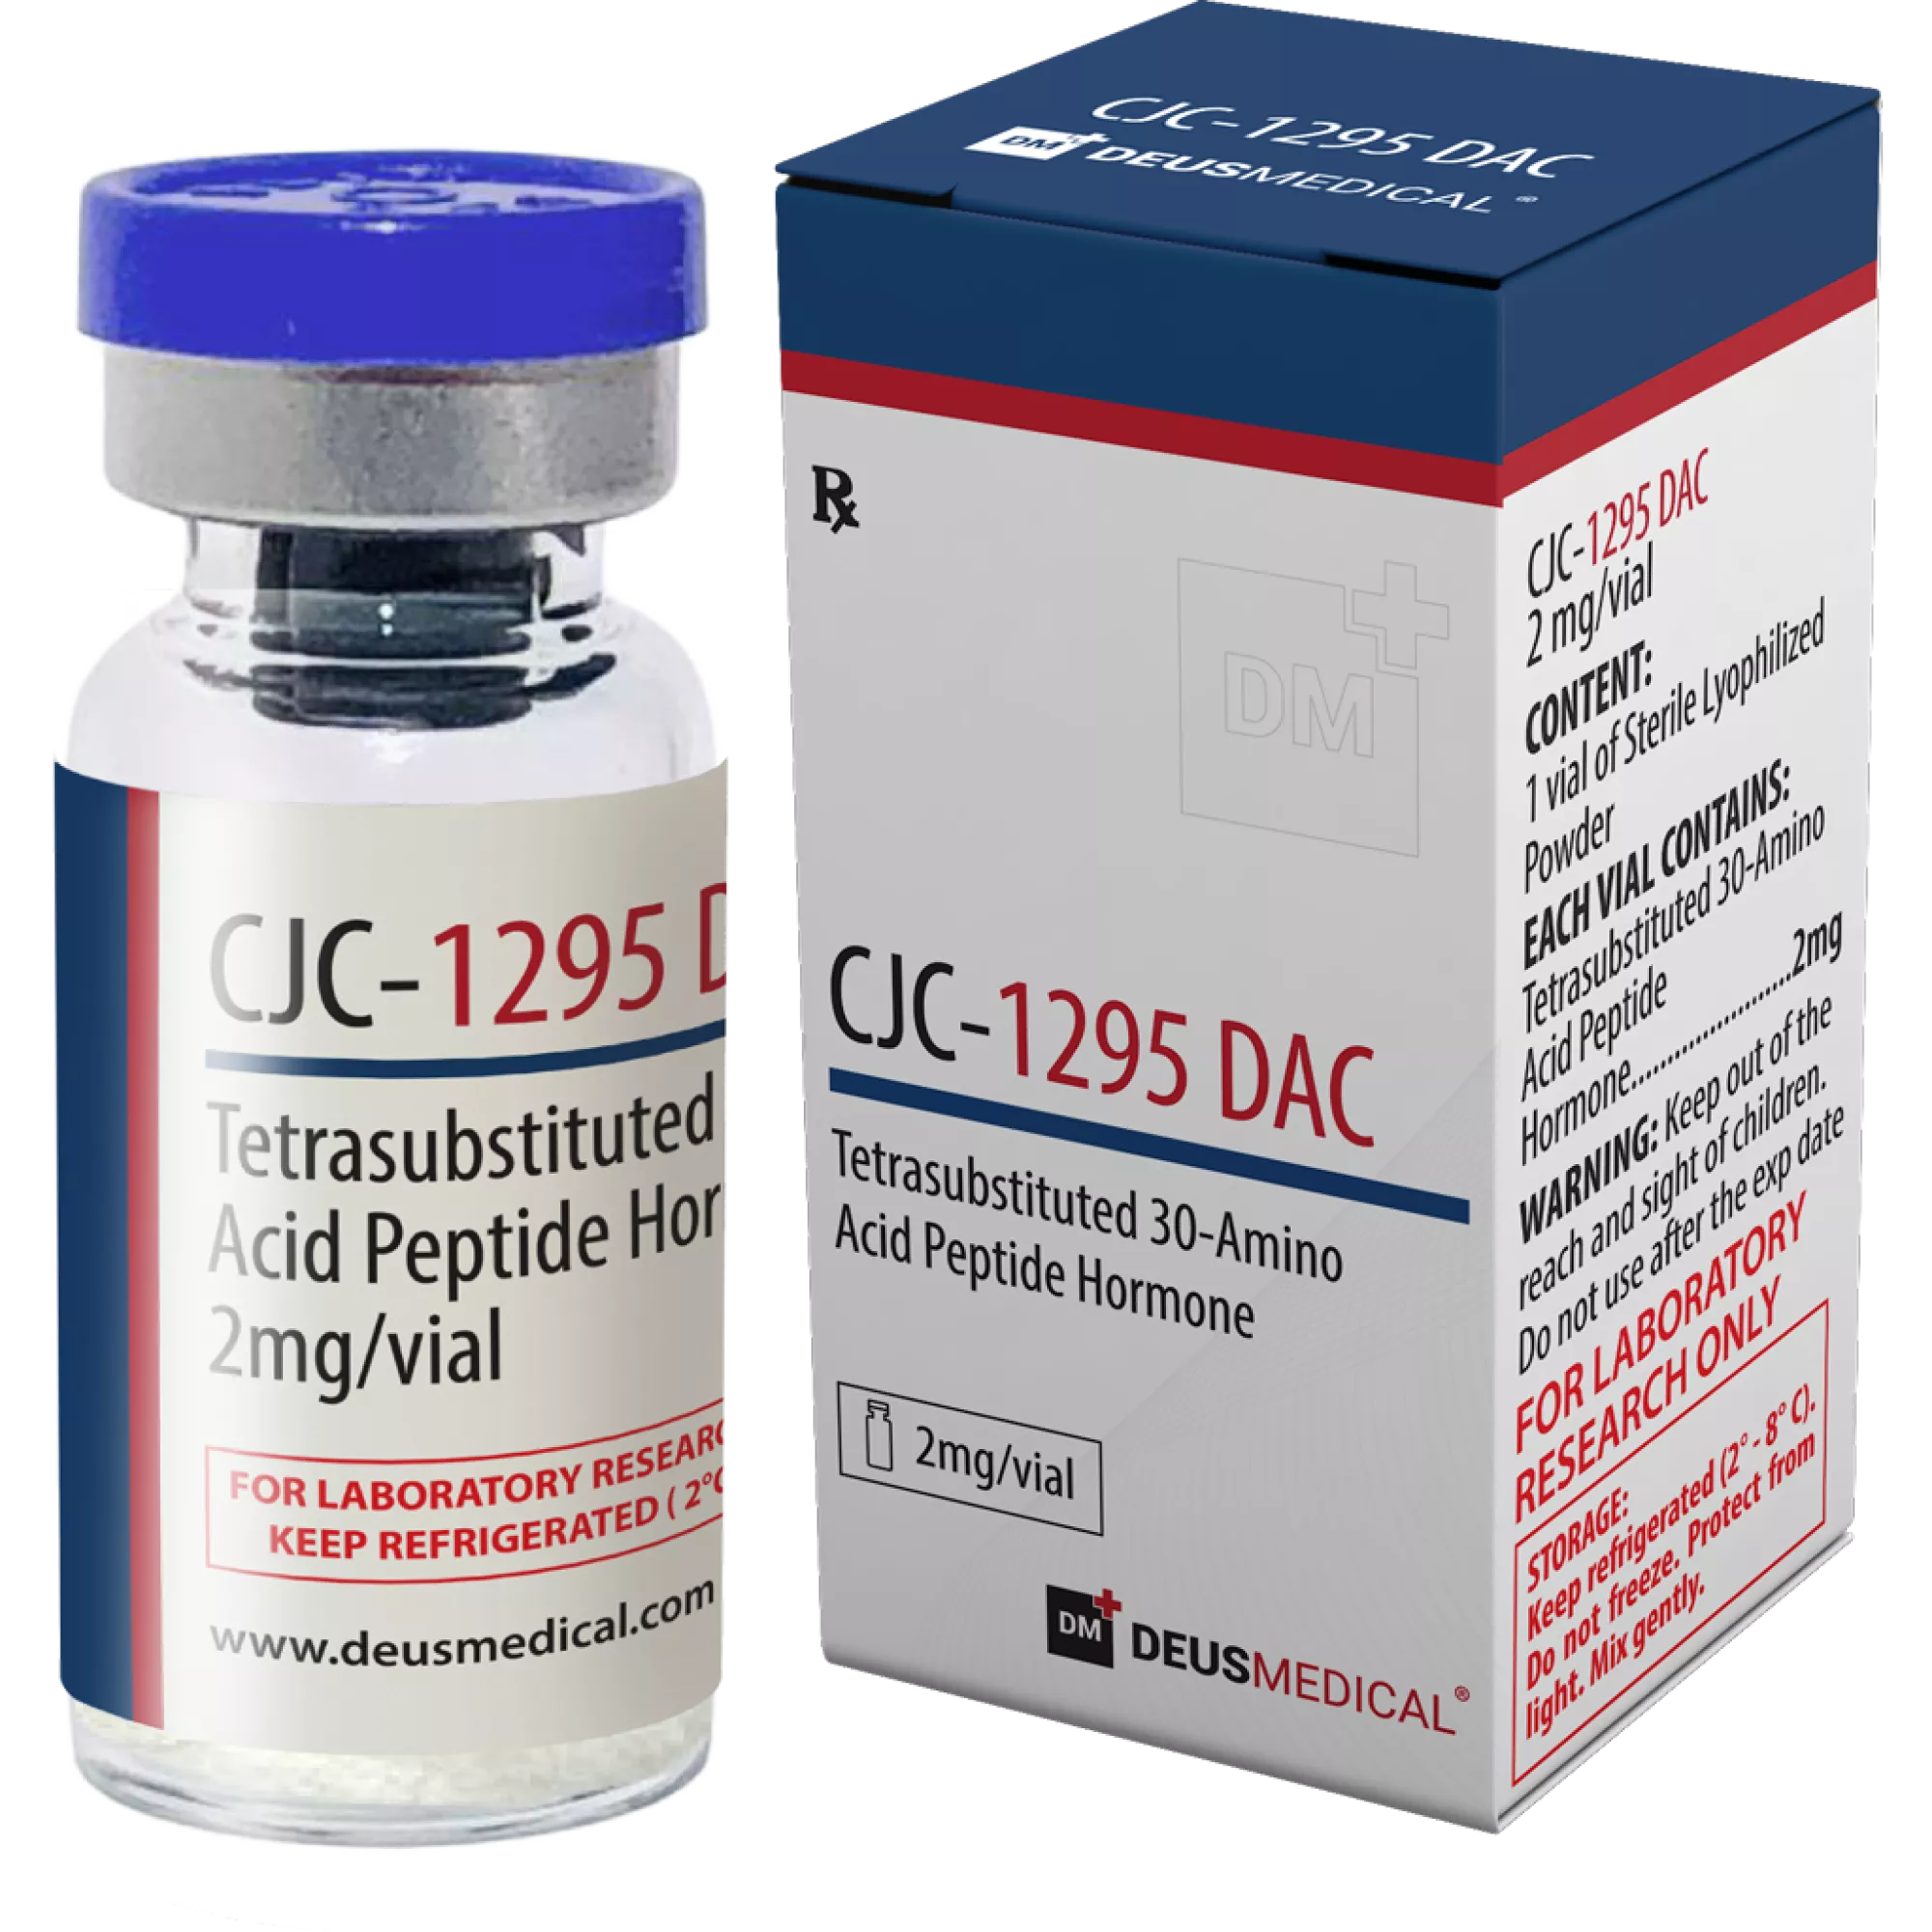 CJC-1295 DAC (Tetrasubstituiertes Peptidhormone mit 30 Aminosäuren), Deus Medical, Kaufen Sie Steroide Online - www.deuspower.shop